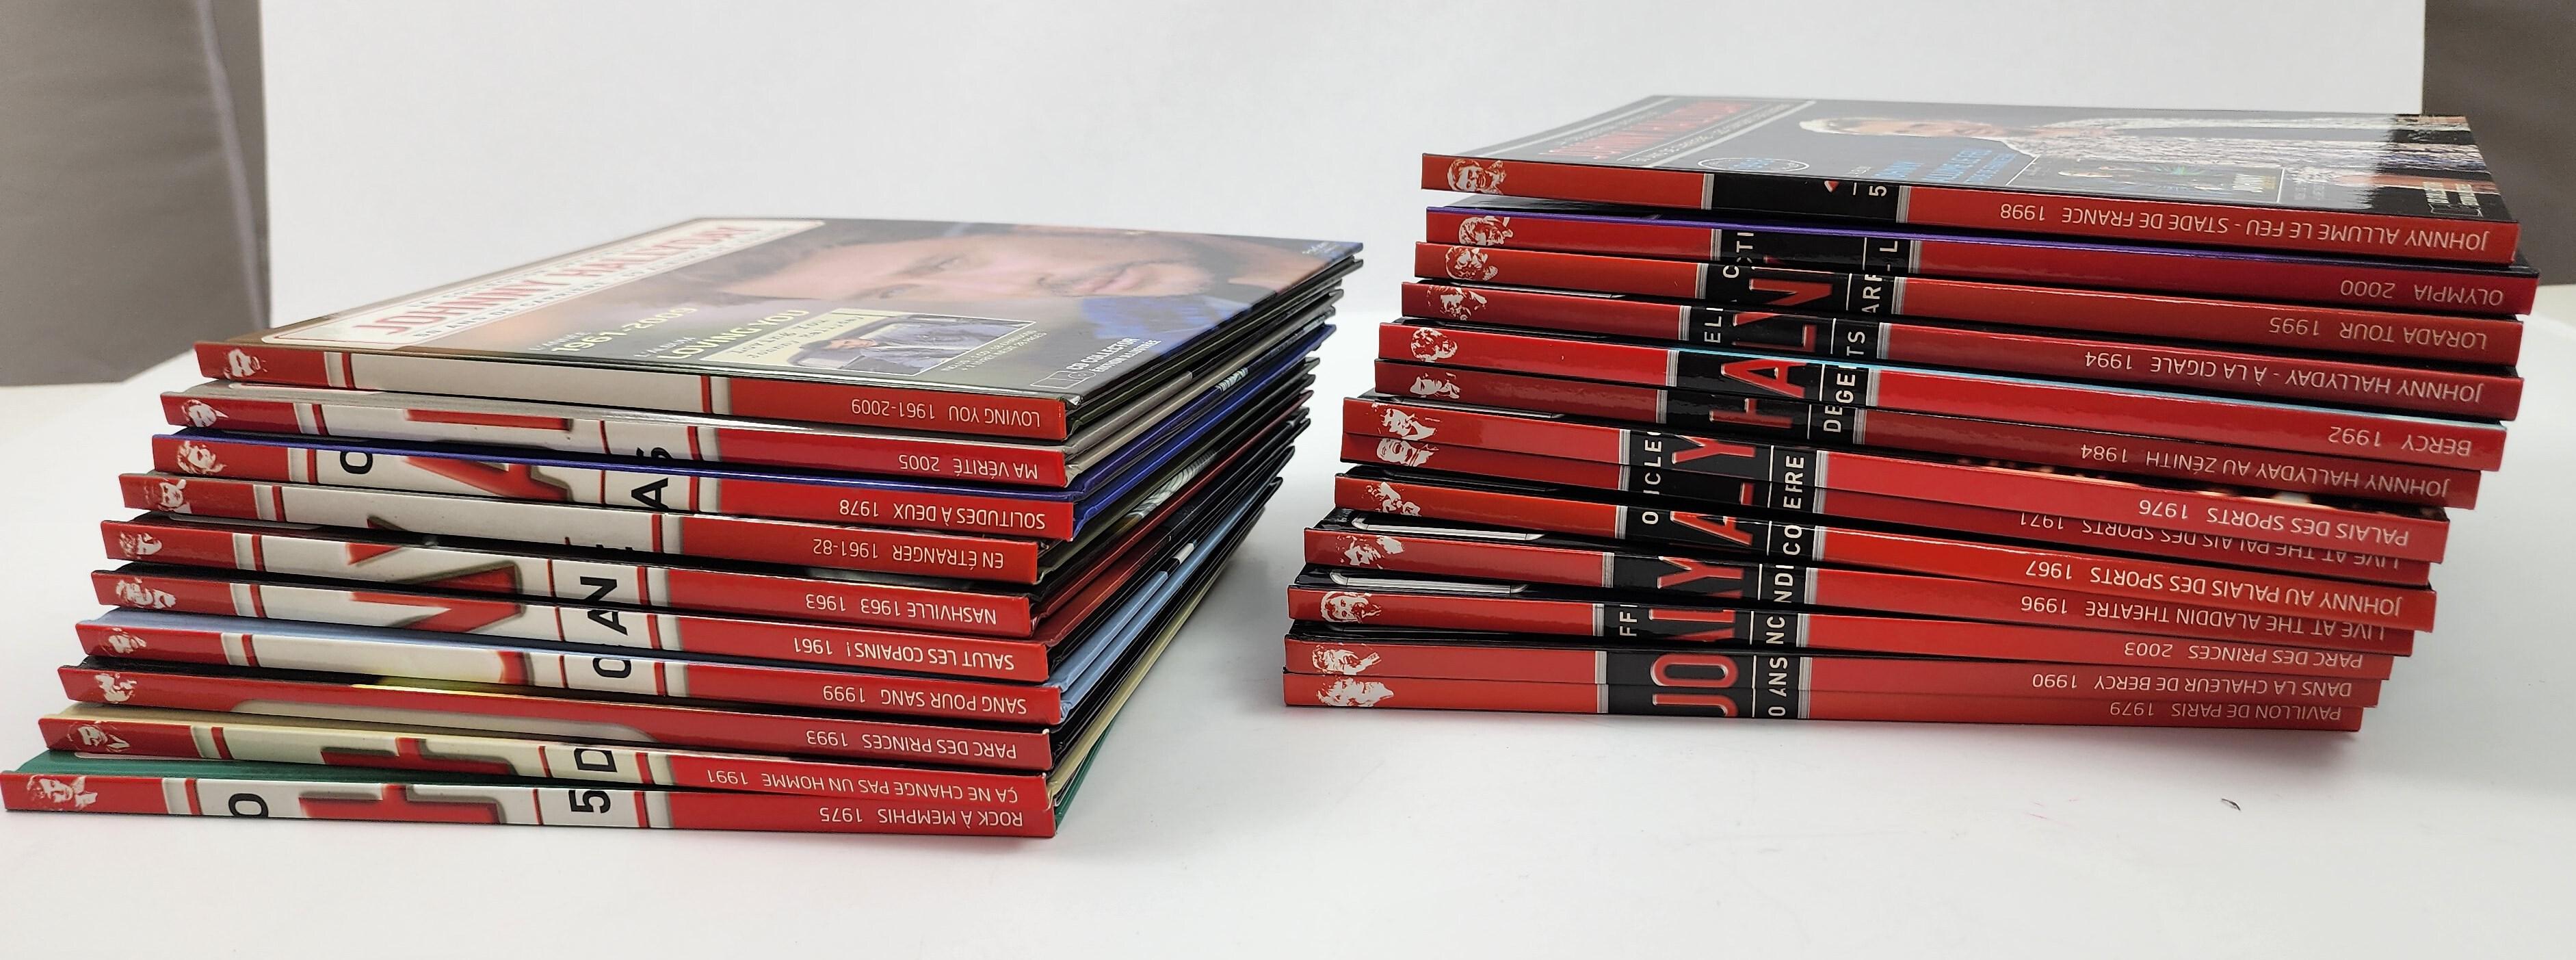 Die 50-jährige Karriere von Johnny Hallyday - Die offizielle Book Collection'S. Französisch Limited Edition.
Die offizielle Sammlung zur Feier der 50-jährigen Karriere von Johnny Hallyday besteht aus dreiundzwanzig Büchern und CDs.
Diese